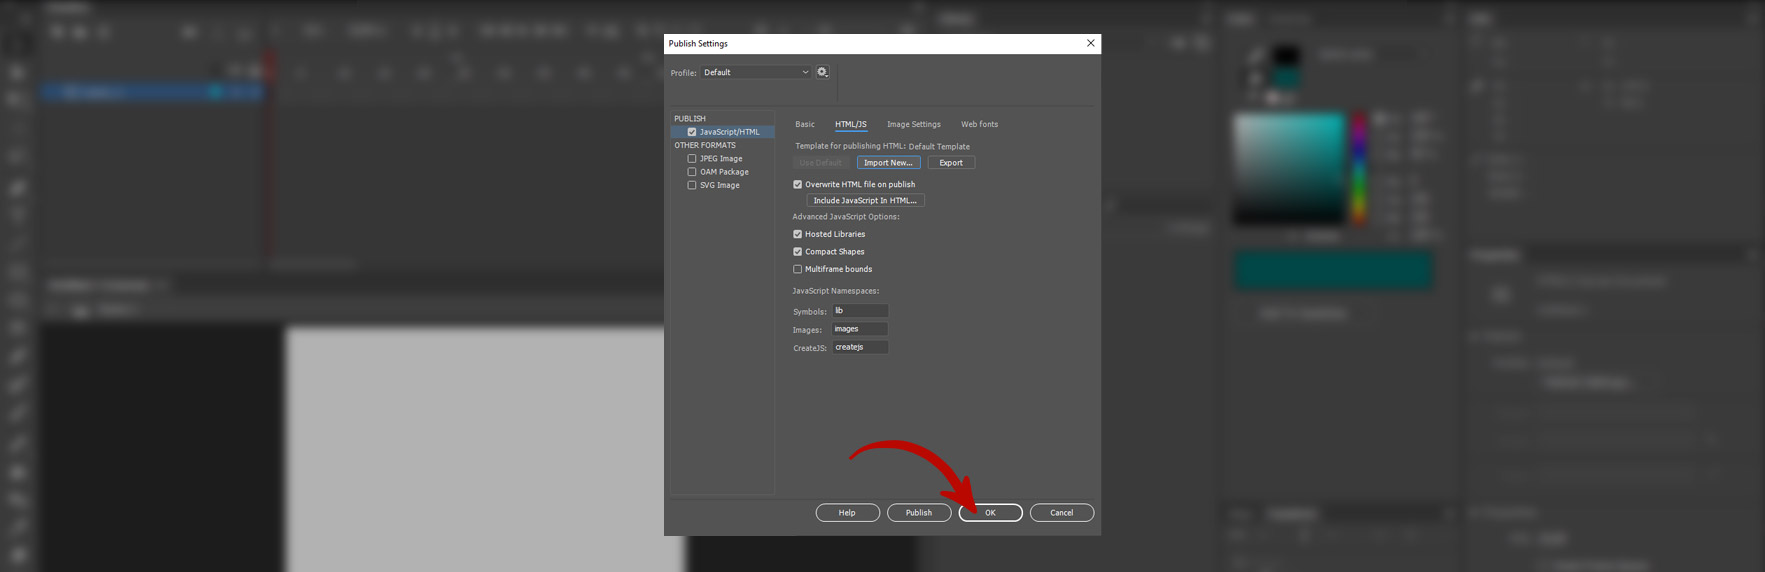 Скриншот программы Adobe Animate. Подтверждение выбранных настроек.